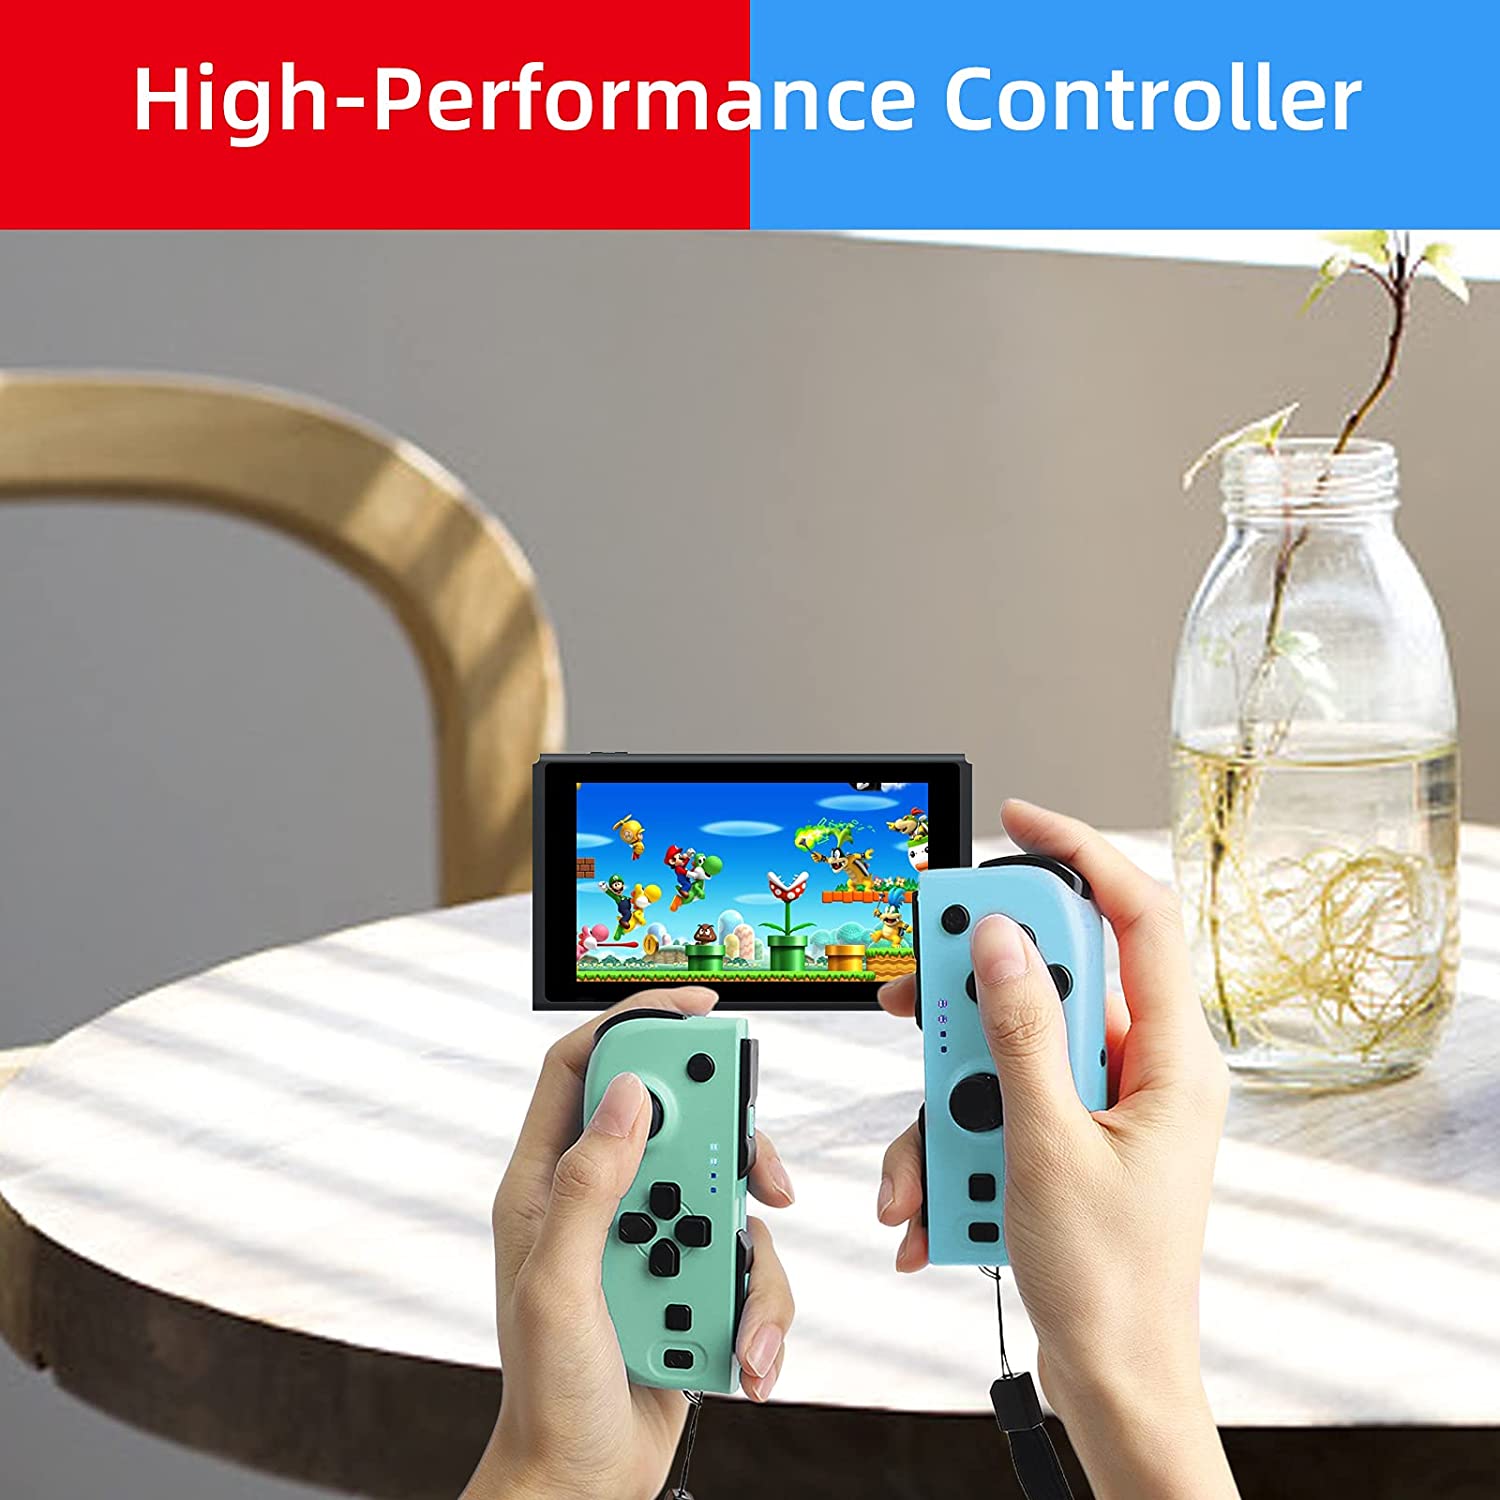 NexiGo controller improves gaming experience.